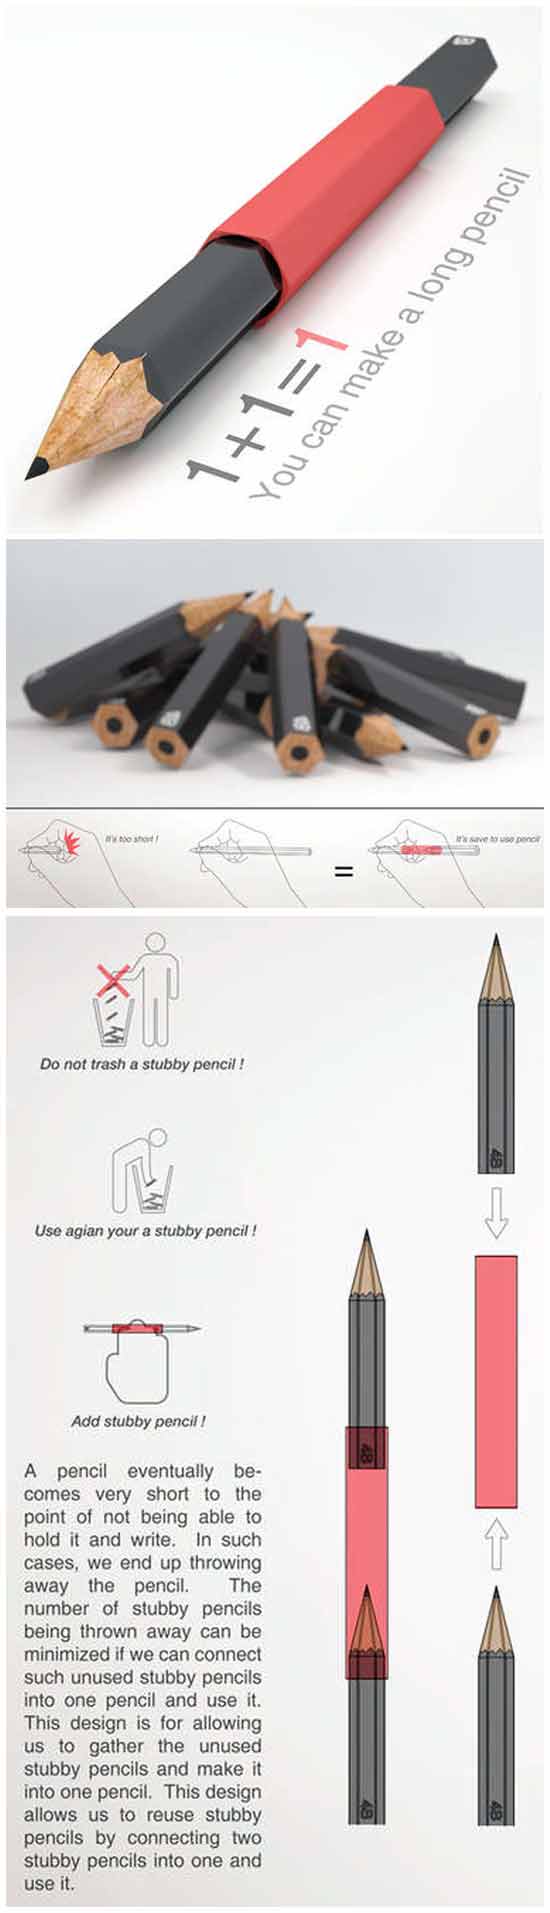 Странные идеи бизнеса: Удлинитель для карандашей